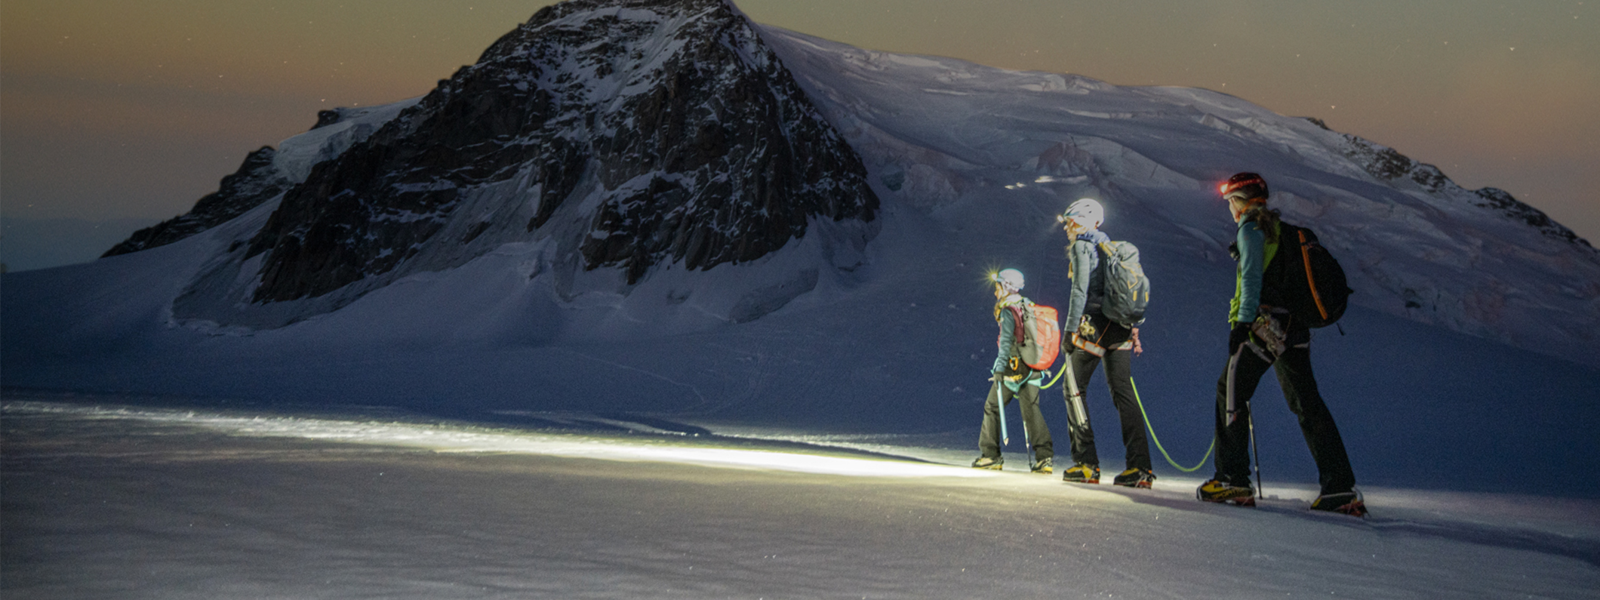 Tres senderistas atraviesan una montaña nevada bajo un cielo estrellado